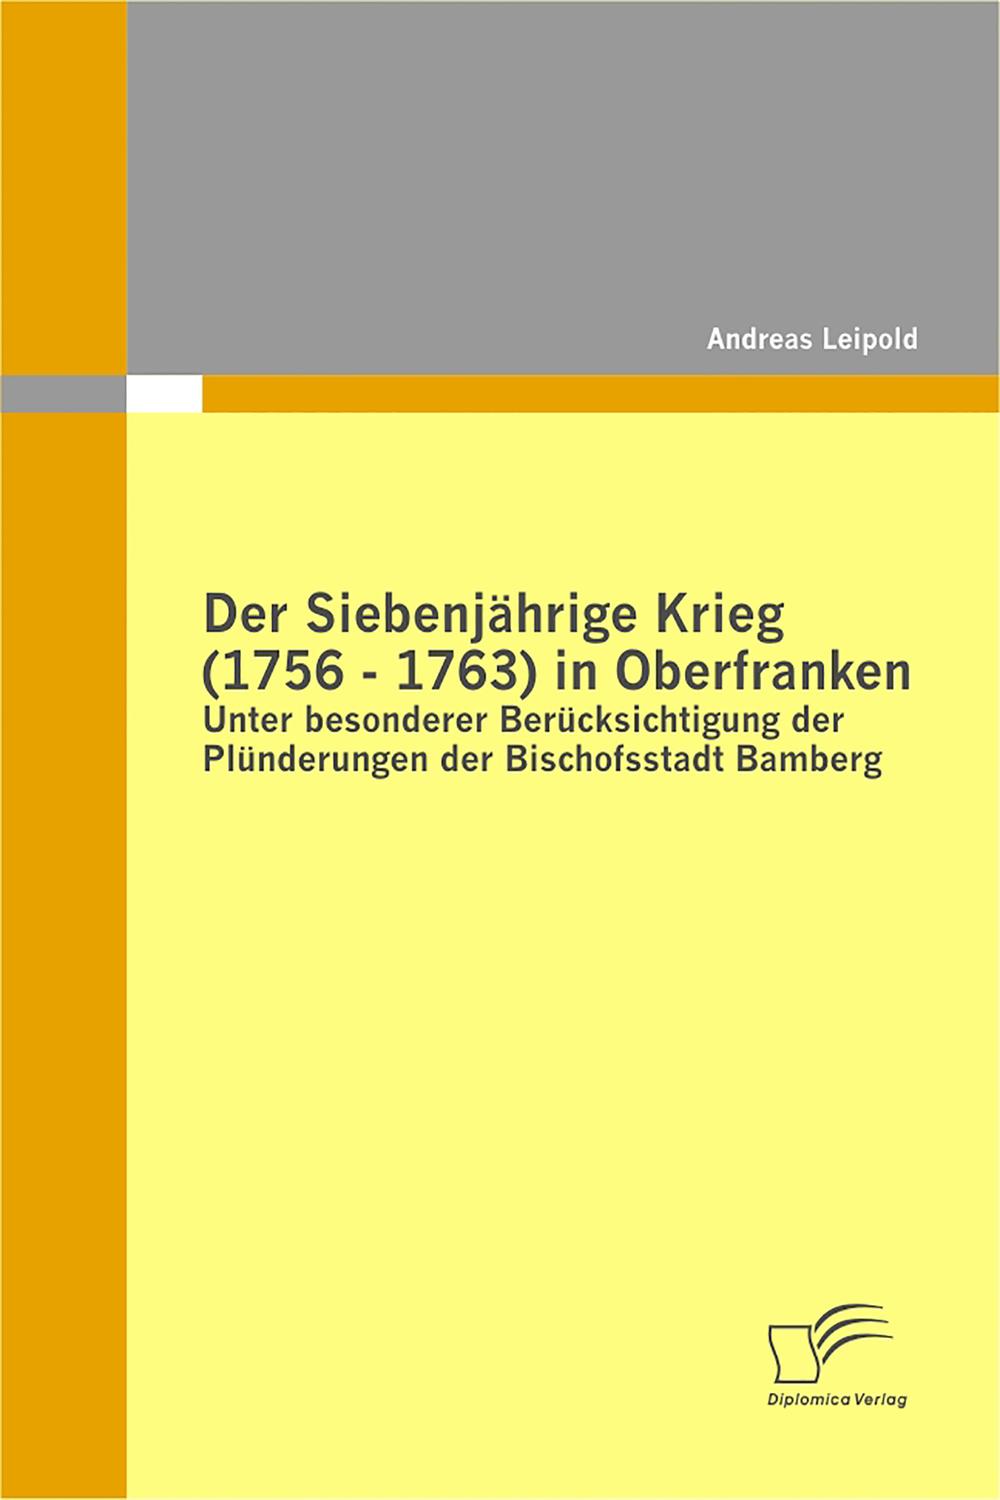 Der Siebenjährige Krieg (1756 - 1763) in Oberfranken - Andreas Leipold